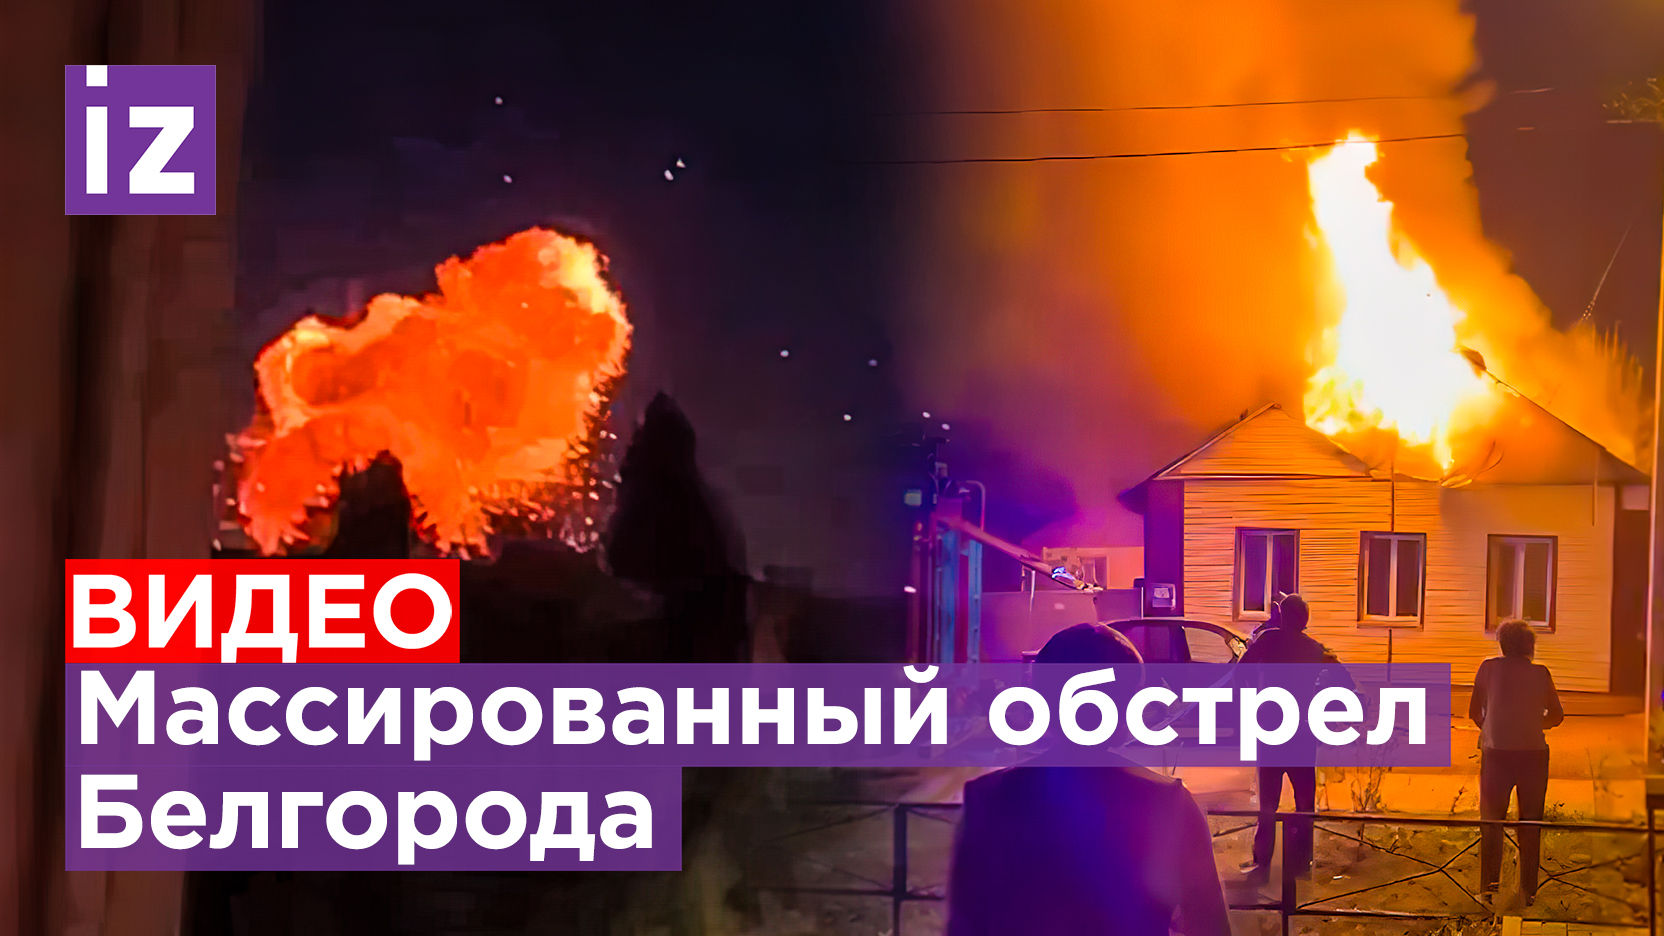 Обстрел Белгорода: видео взрыва и работы ПВО / Известия